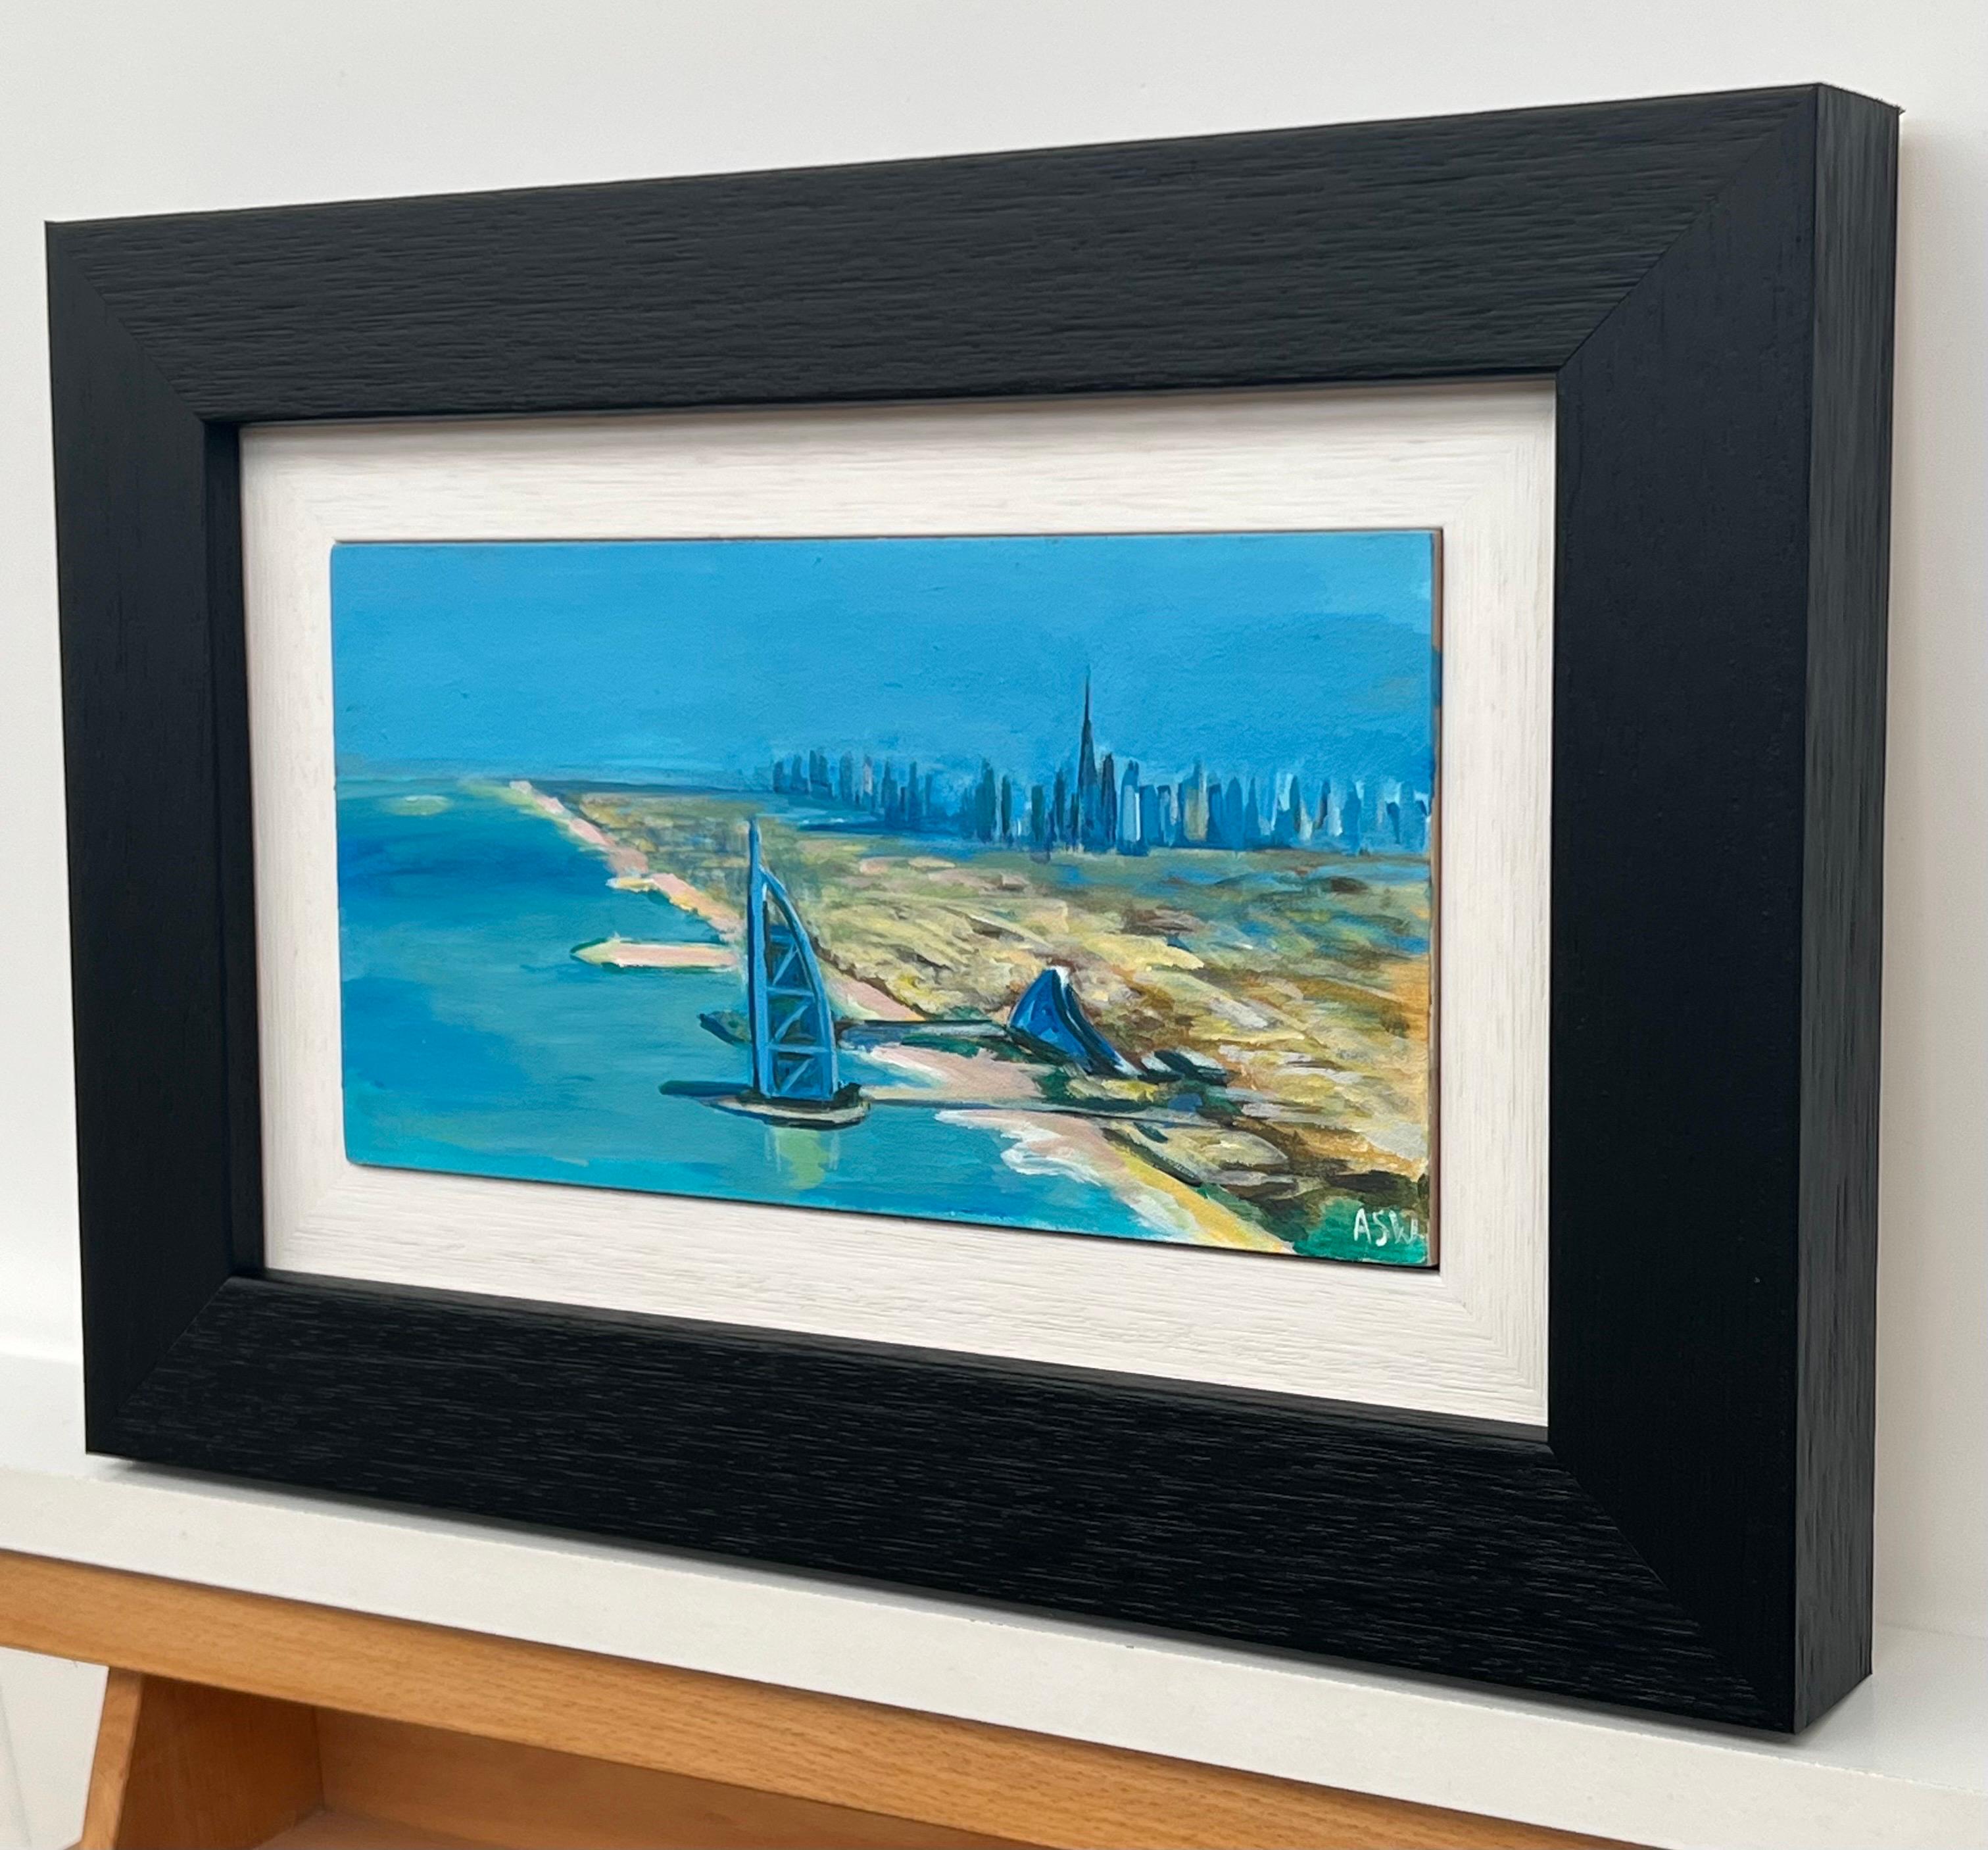 Peinture miniature de la ville de Dubaï, Émirats arabes unis, un original unique de l'artiste britannique contemporaine Angela Wakefield. Une ligne d'horizon vibrante et futuriste émerge de la toile, alors que les sables dorés du désert rencontrent